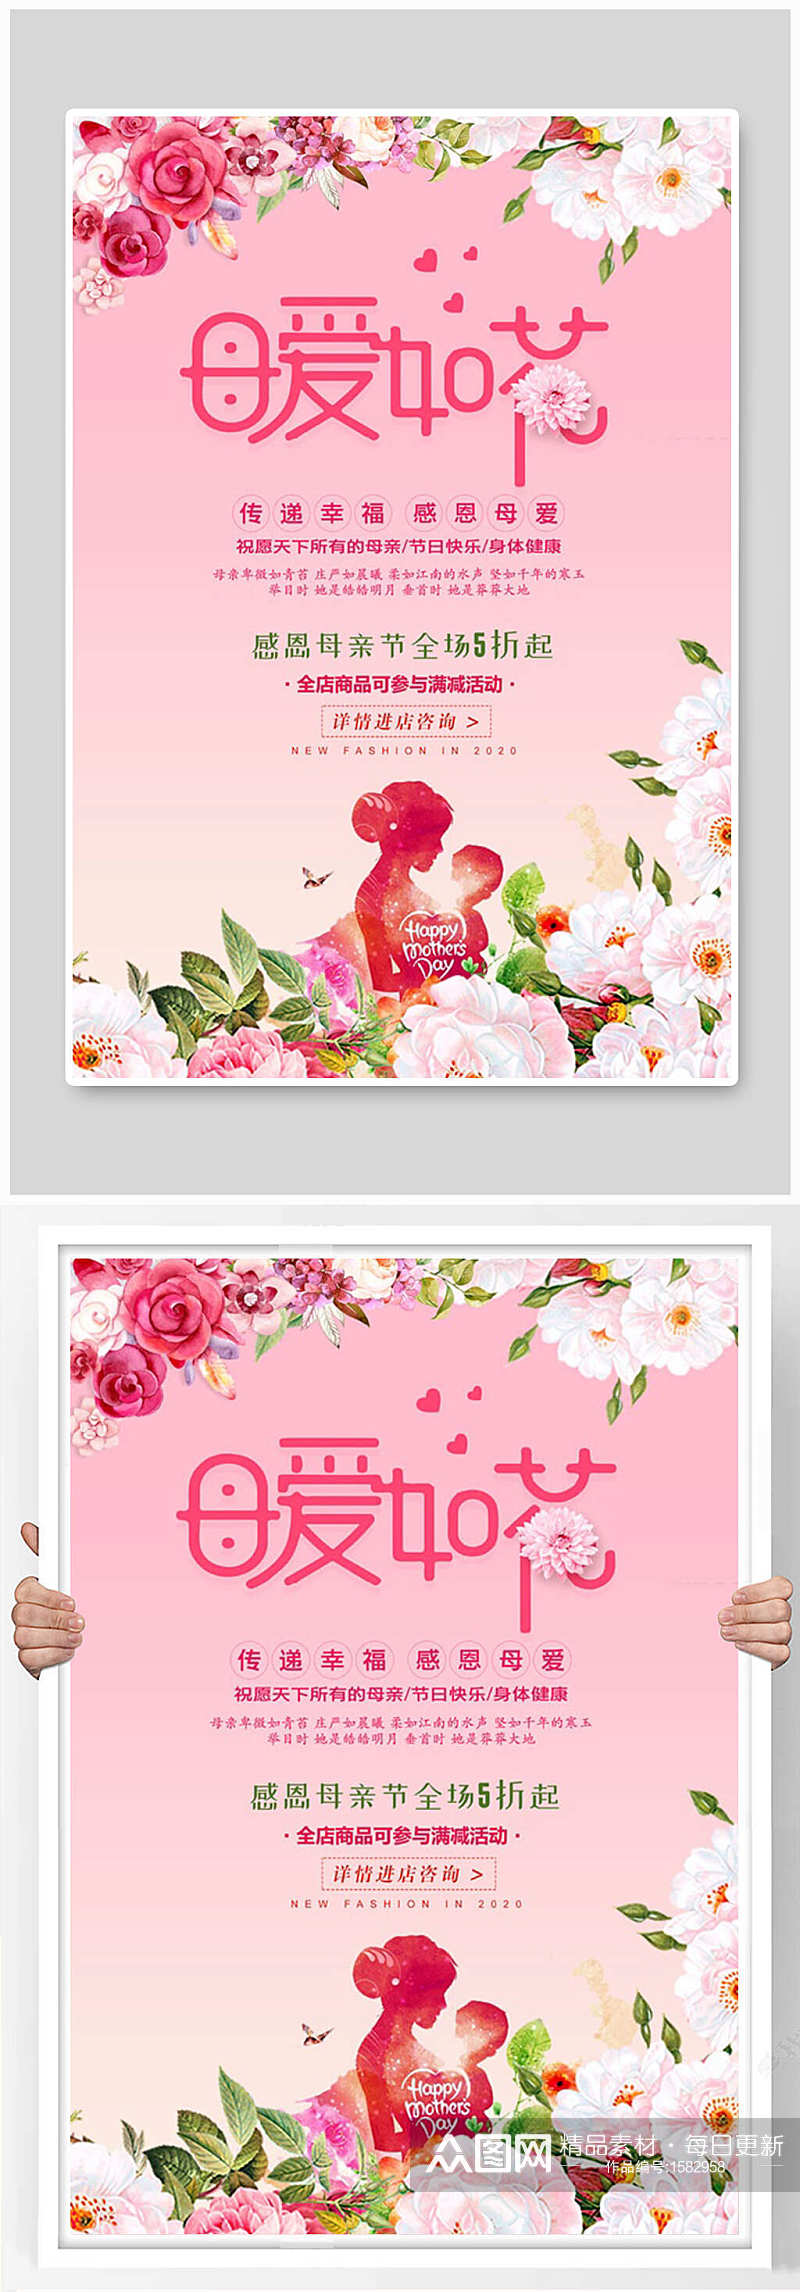 粉色唯美大气母亲节促销海报设计素材